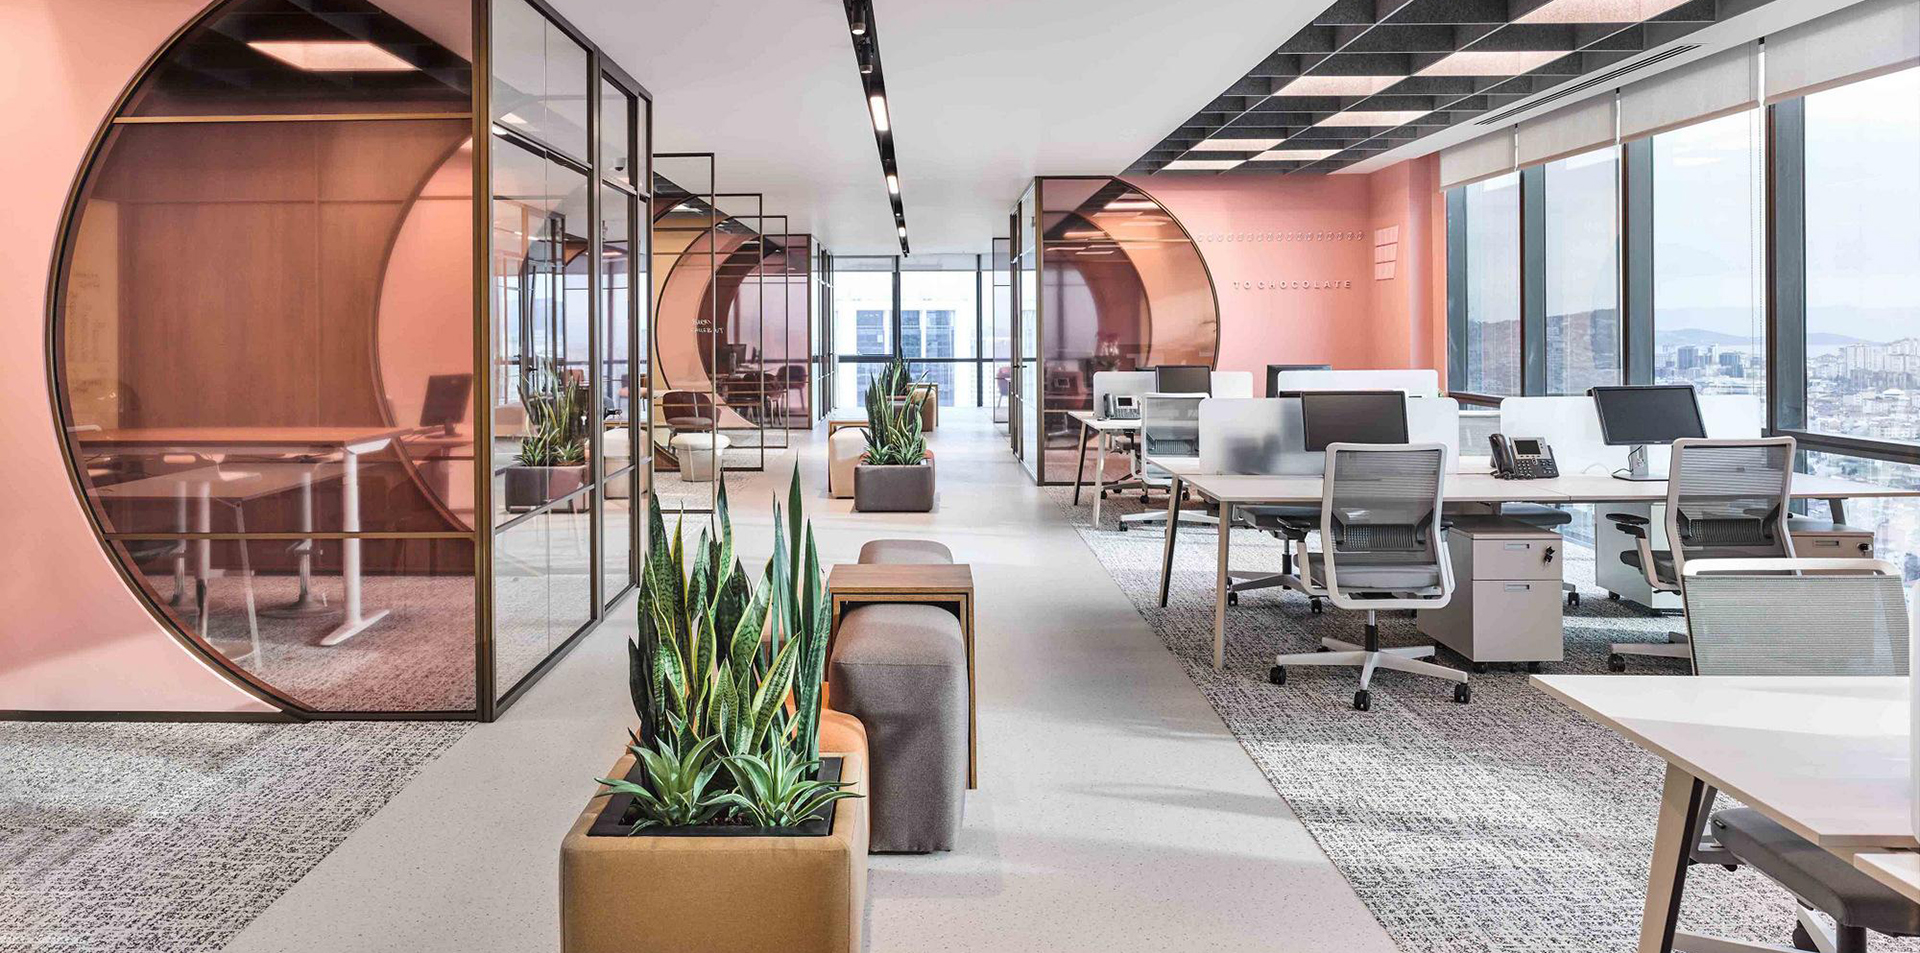 Với thiết kế nội thất văn phòng cao cấp, không gian làm việc của bạn sẽ trở nên sang trọng và chuyên nghiệp hơn bao giờ hết. Đội ngũ kiến trúc sư của chúng tôi sẵn sàng tư vấn và thiết kế theo ý tưởng của bạn để tạo nên một không gian làm việc đẳng cấp, phù hợp với từng nhu cầu và mục đích sử dụng.